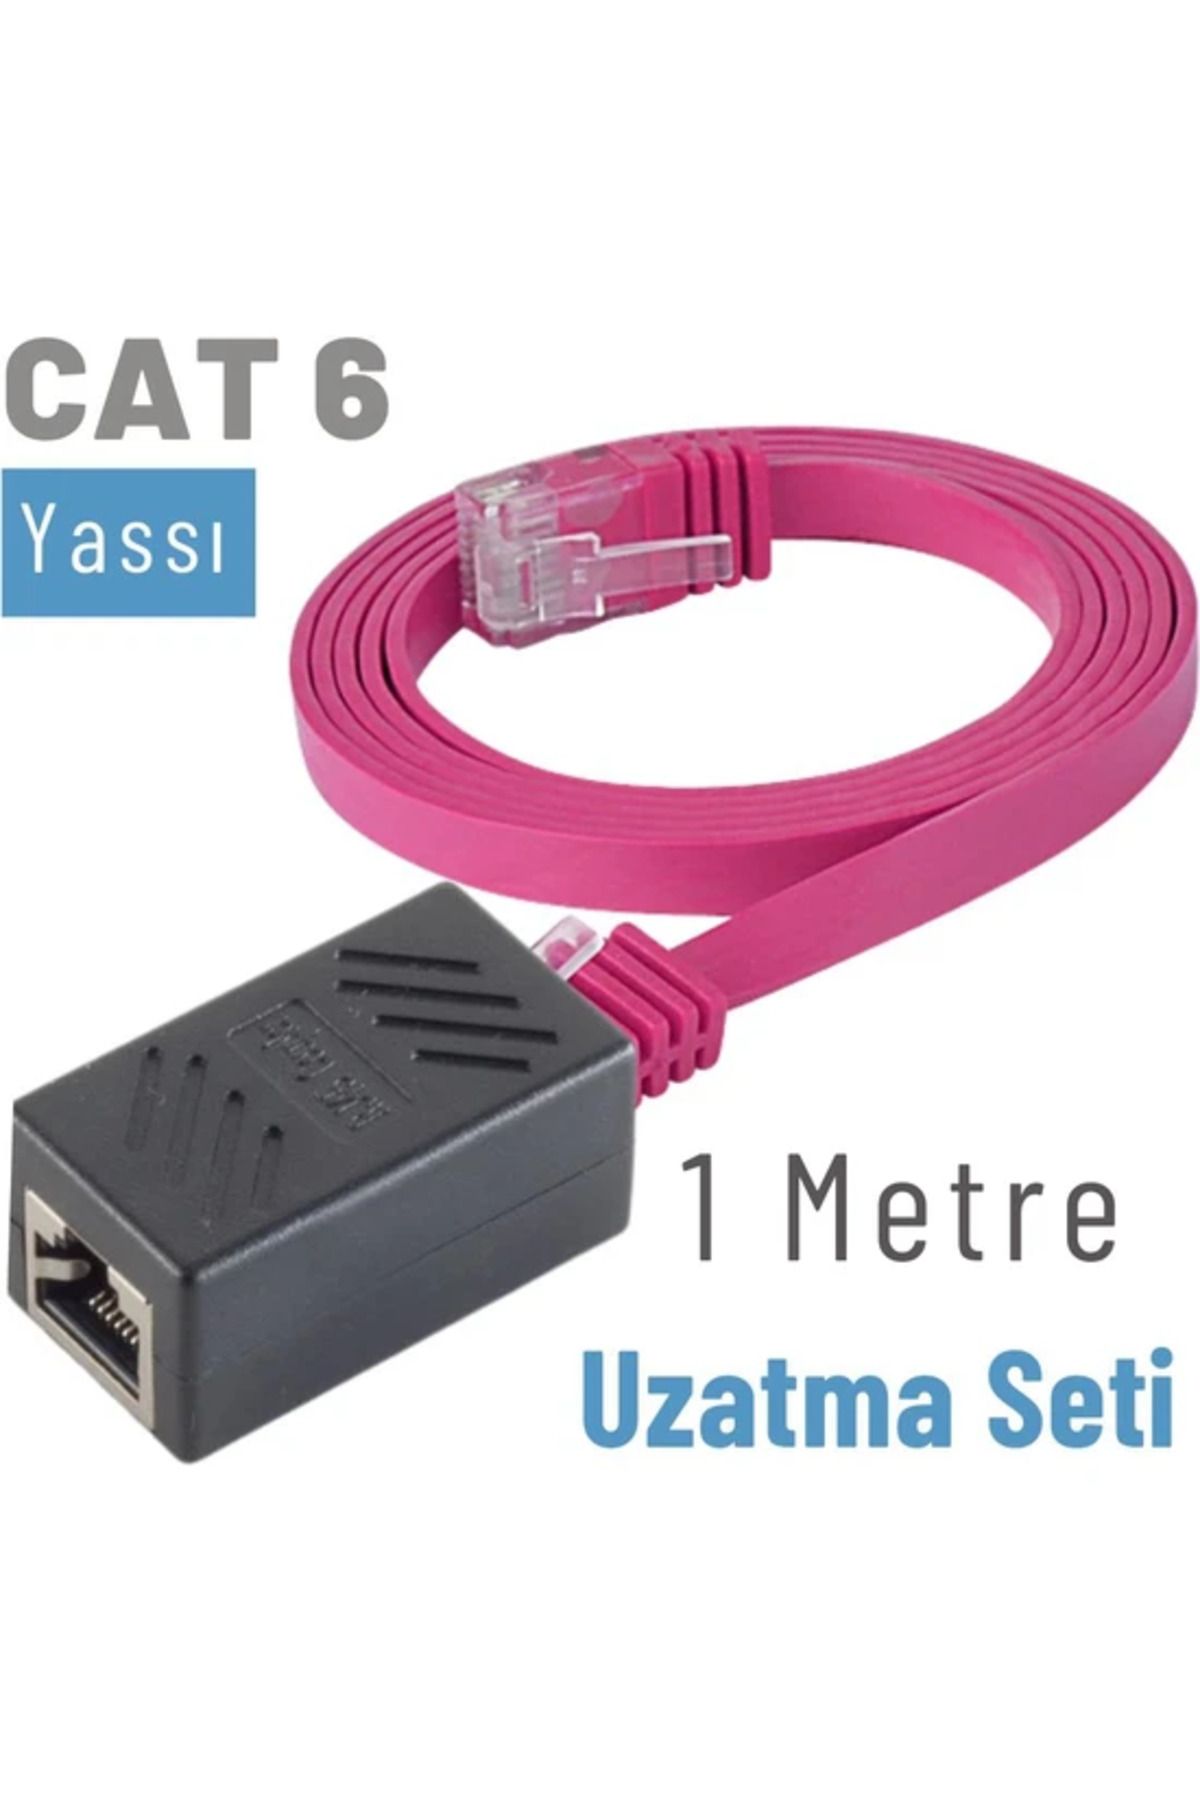 IRENIS Cat6 Kablo 1 Metre Uzatma Seti, Yassı Ethernet Kablo Ve Ekleyici,